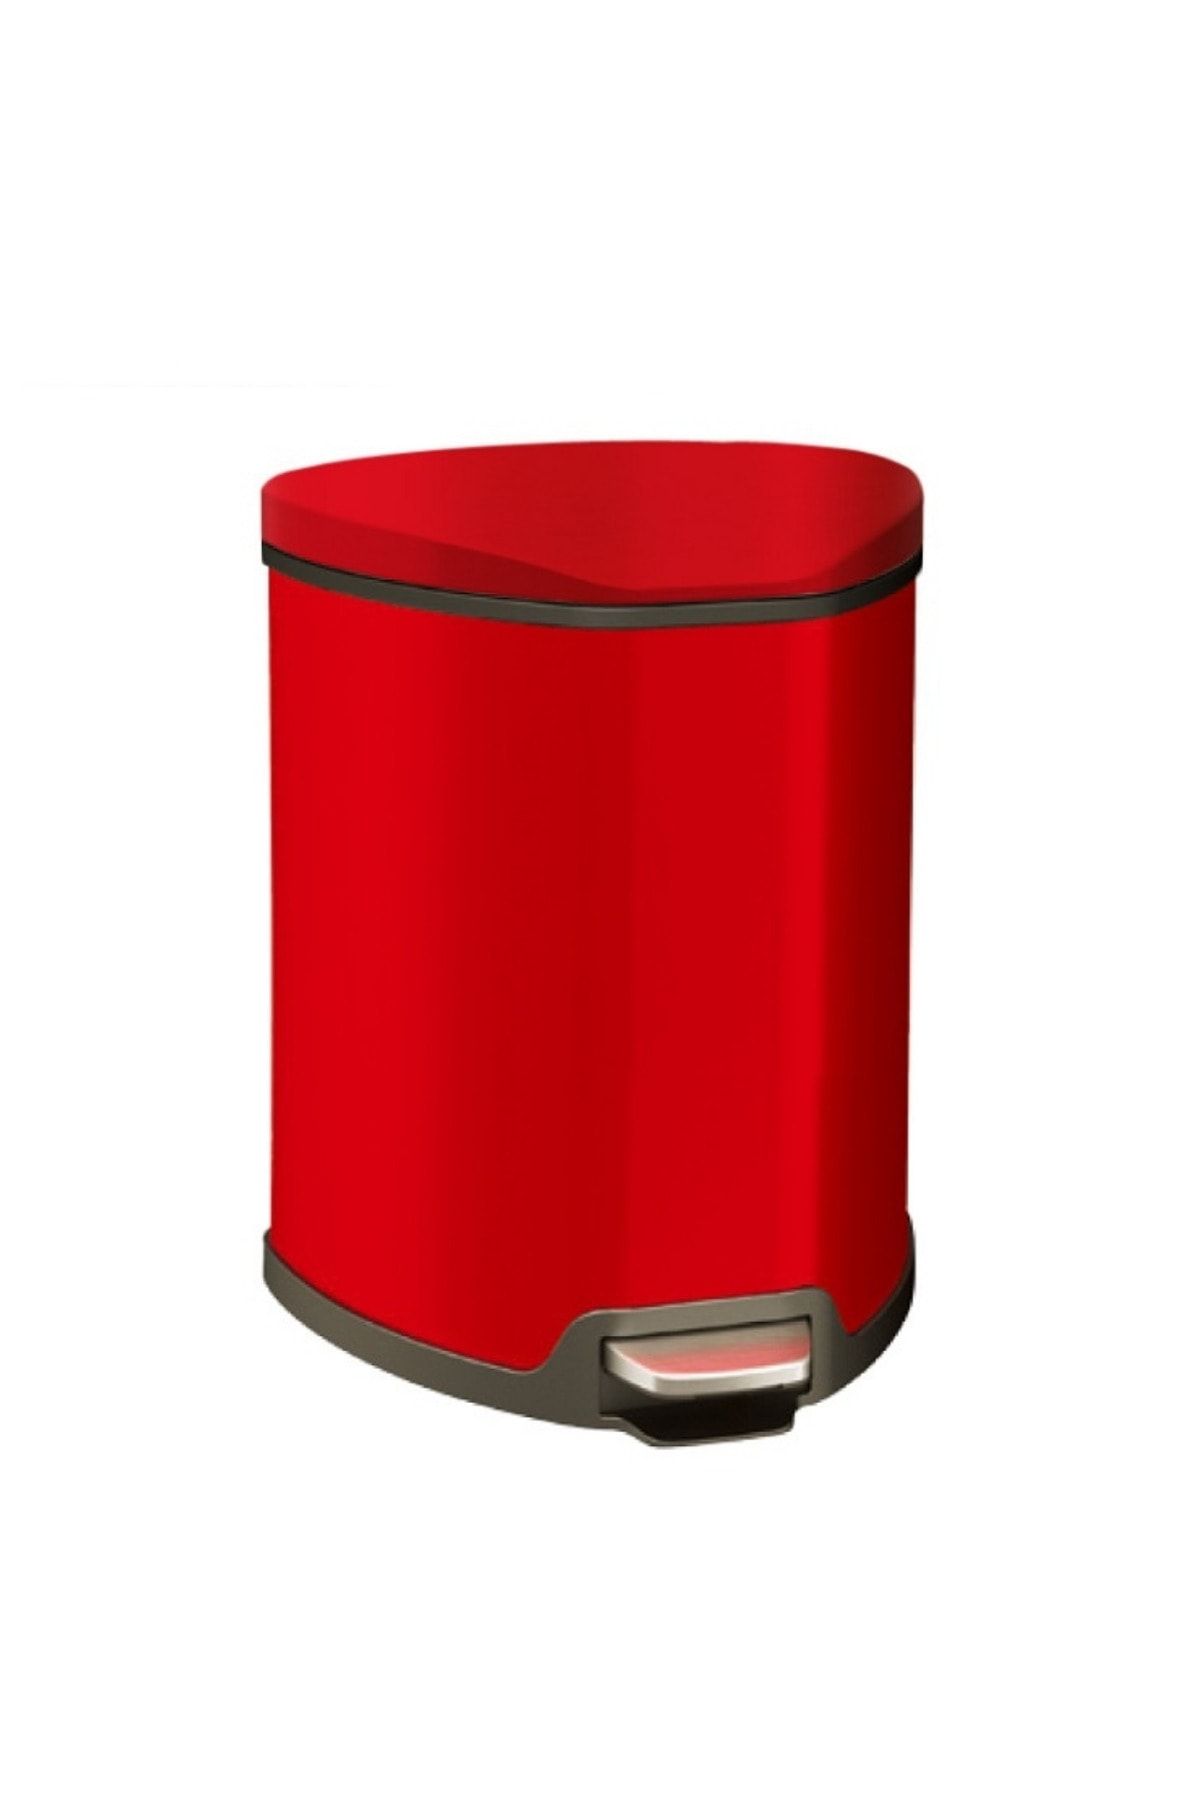 Prima Nova Paslanmaz Çelik 5 Lt Softclose Pedallı Banyo Mutfak Ofis Çöp Kovası Kırmızı